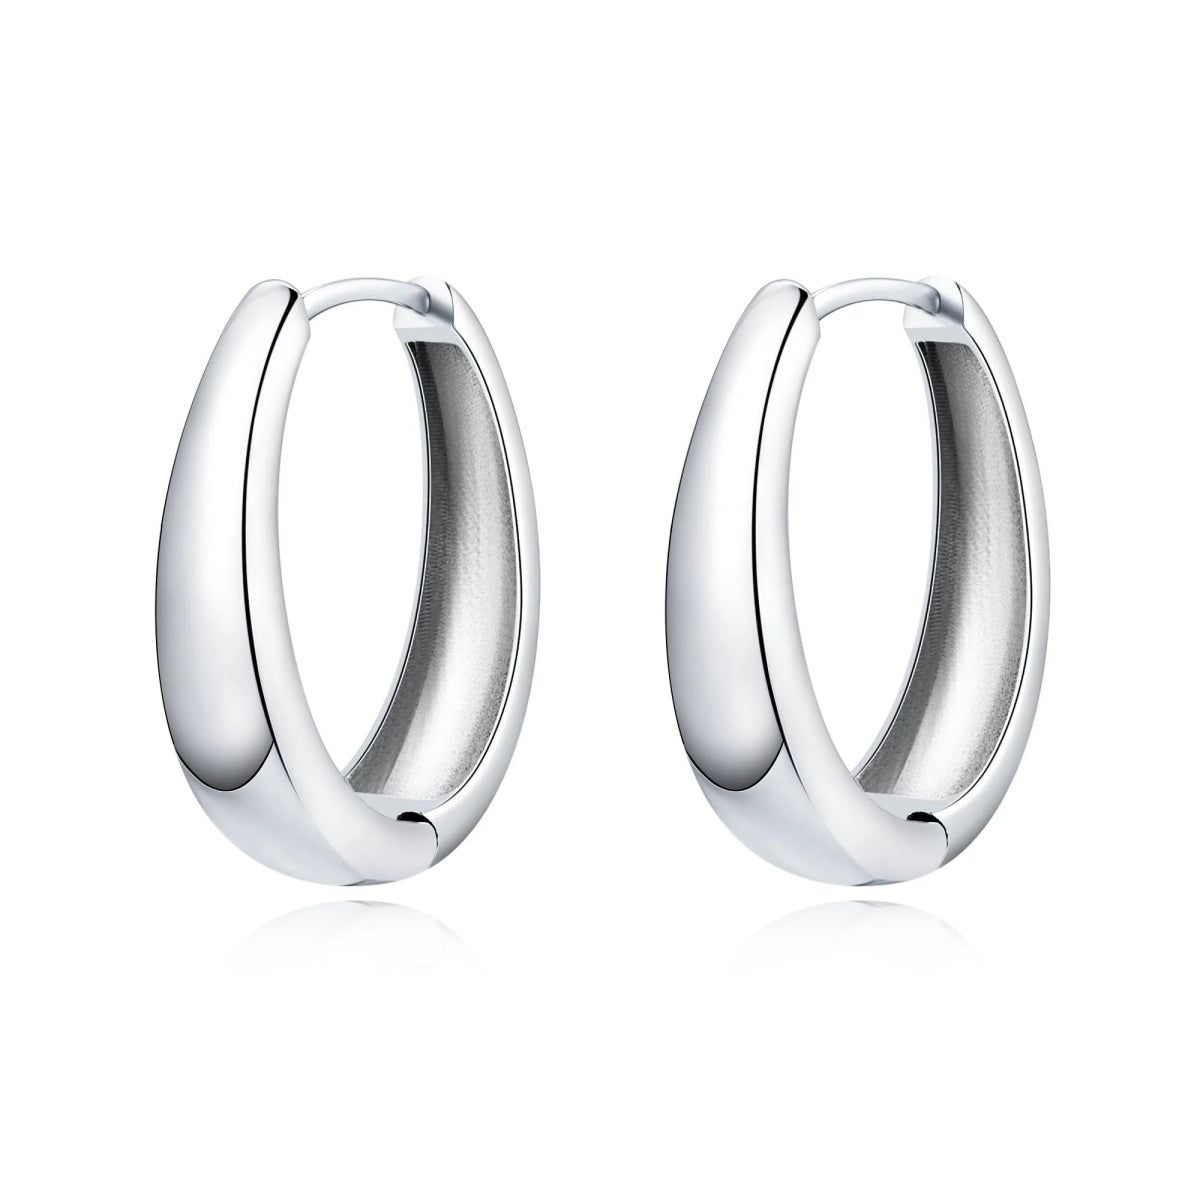 "Oval Hoop Ring" Earrings - Milas Jewels Shop